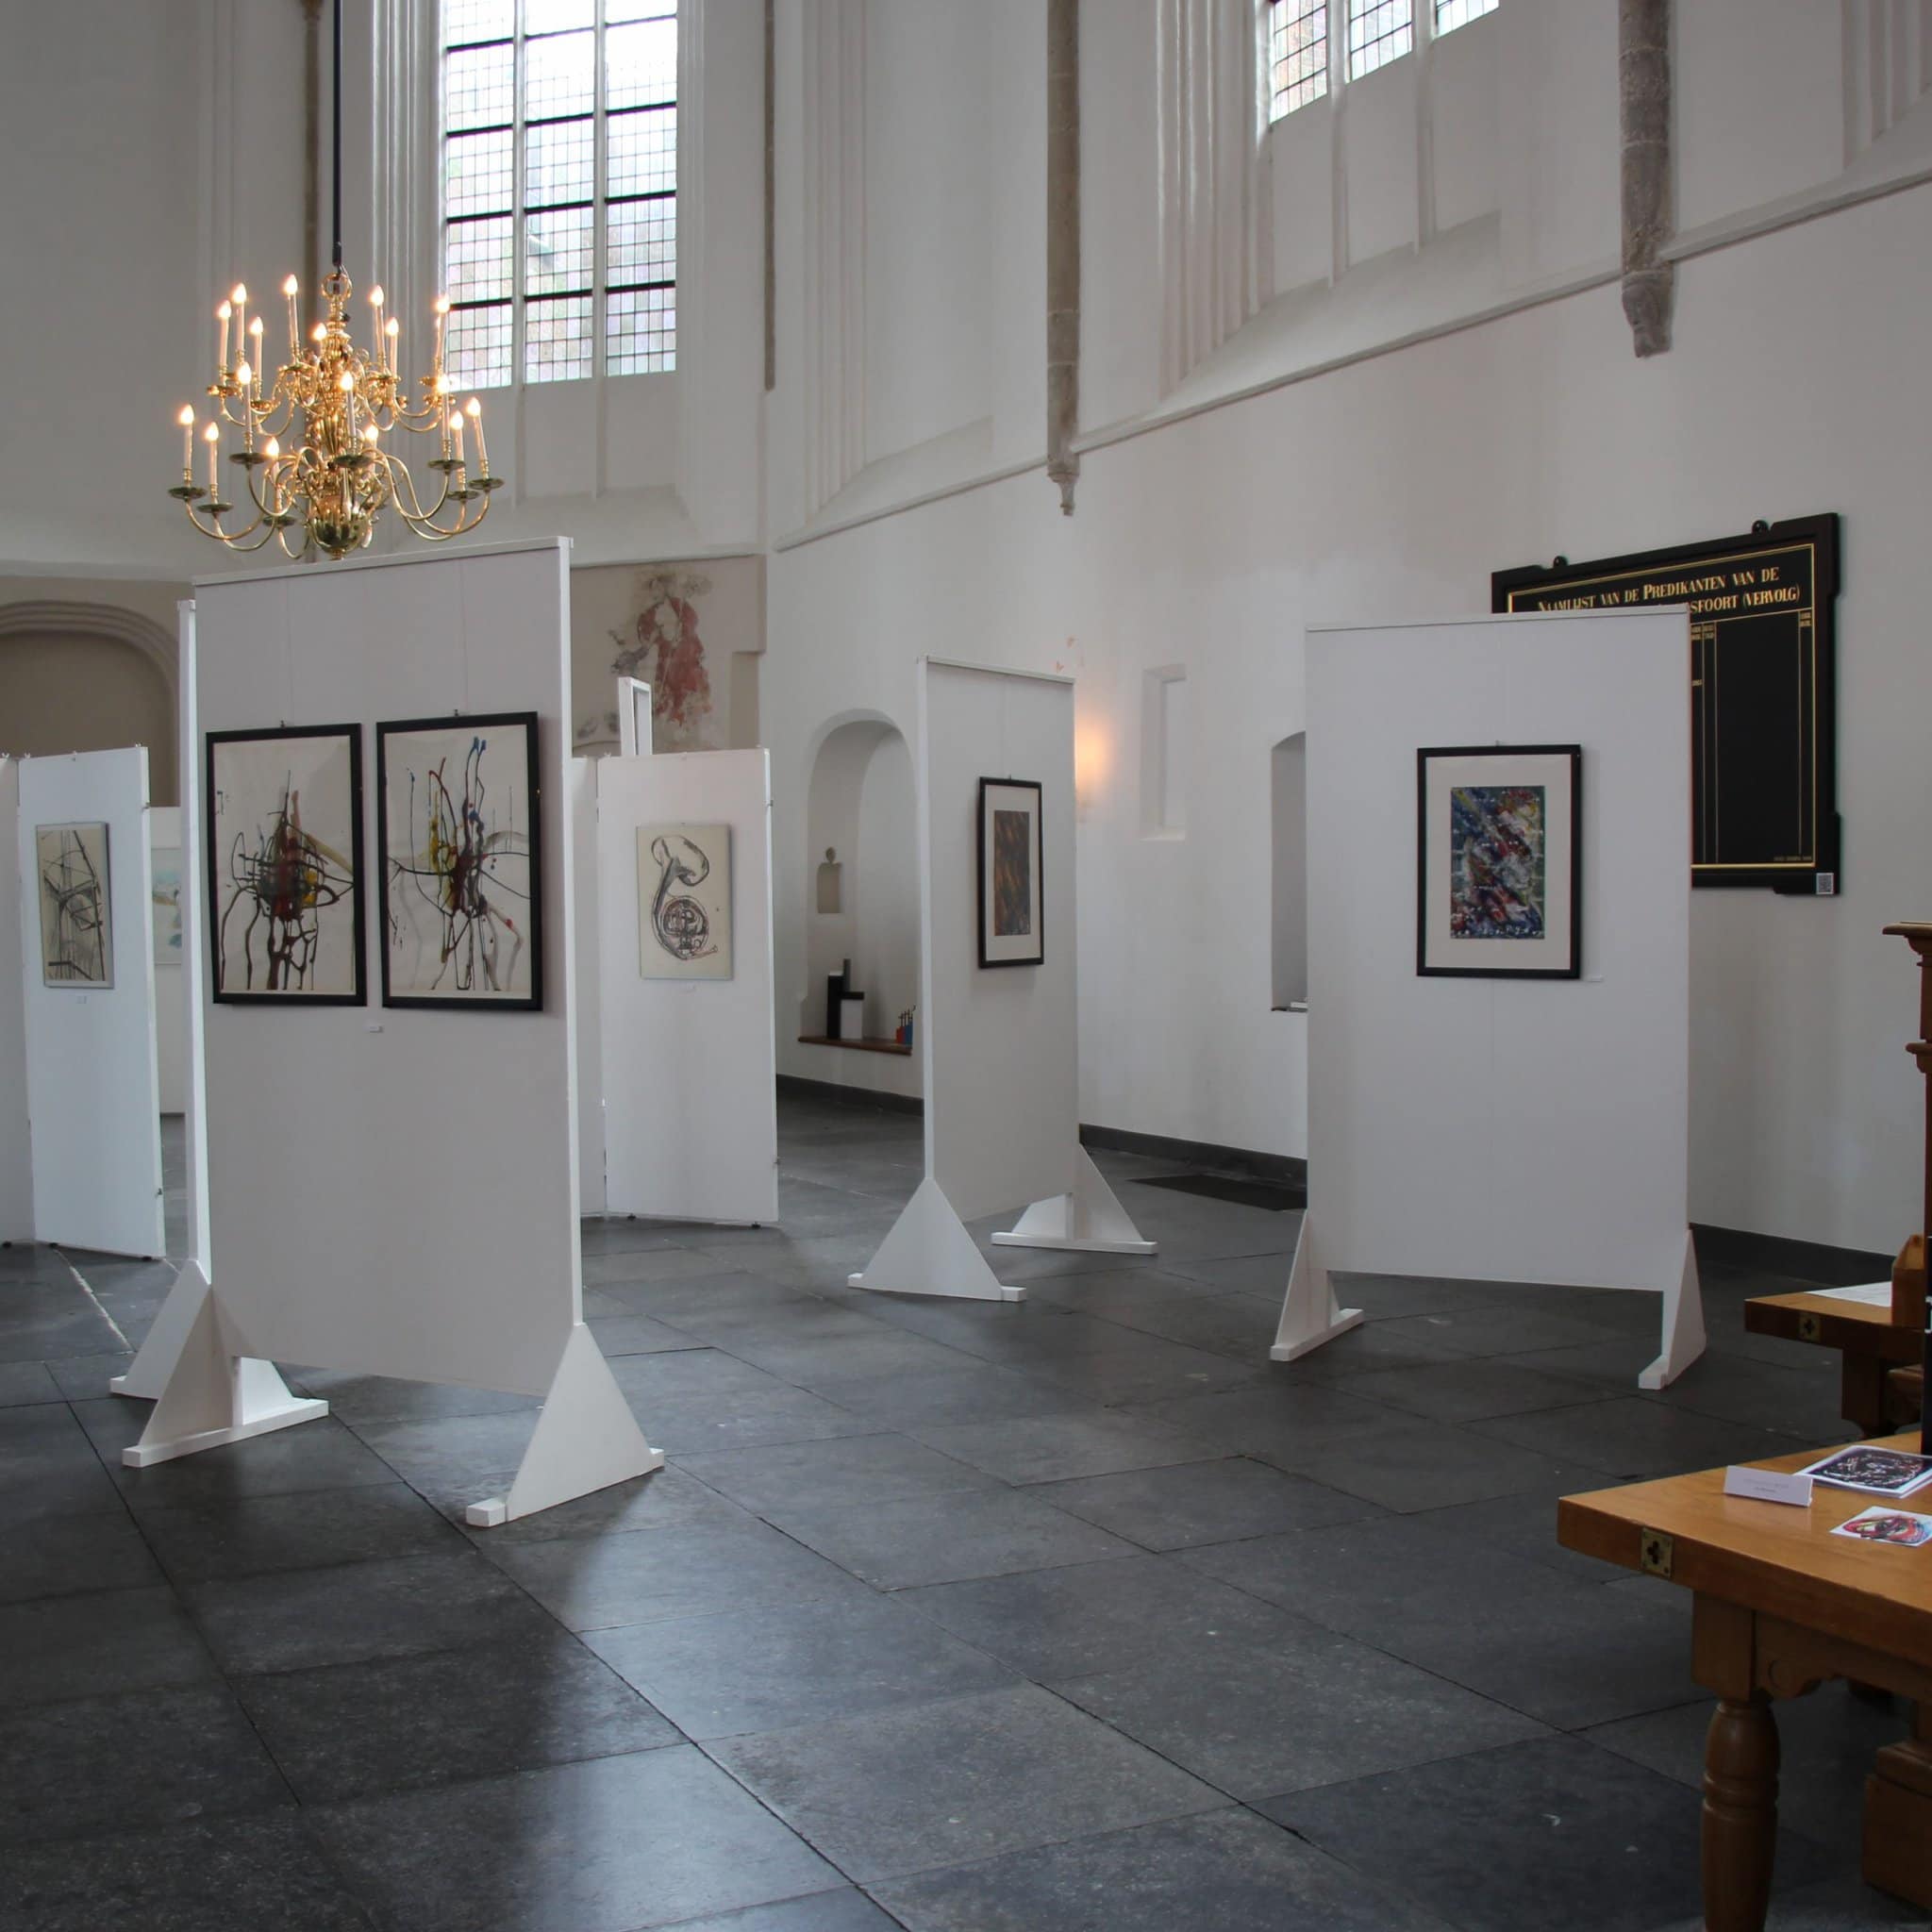 De kunstwerken in de Sint-Joriskerk